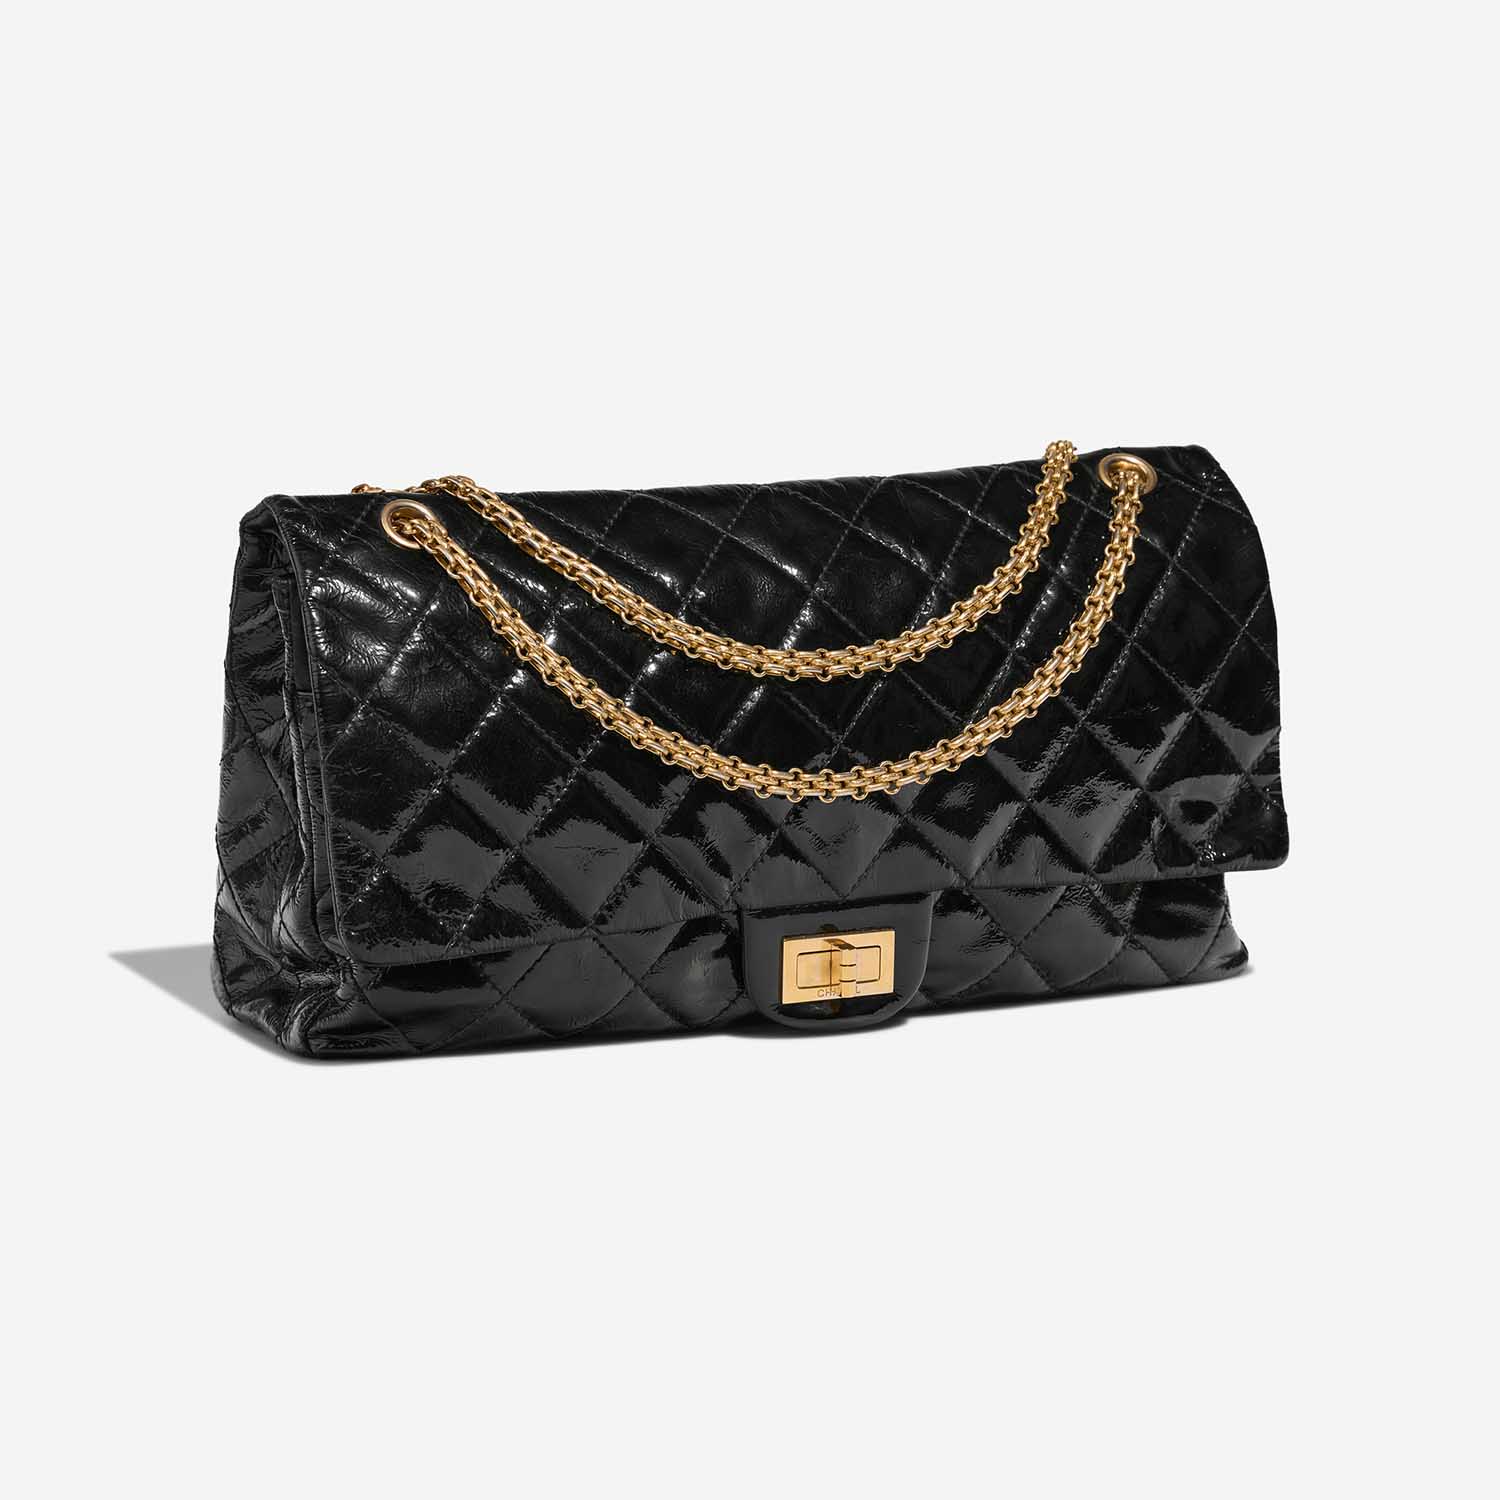 Chanel 255Reissue Black Side Front | Verkaufen Sie Ihre Designer-Tasche auf Saclab.com